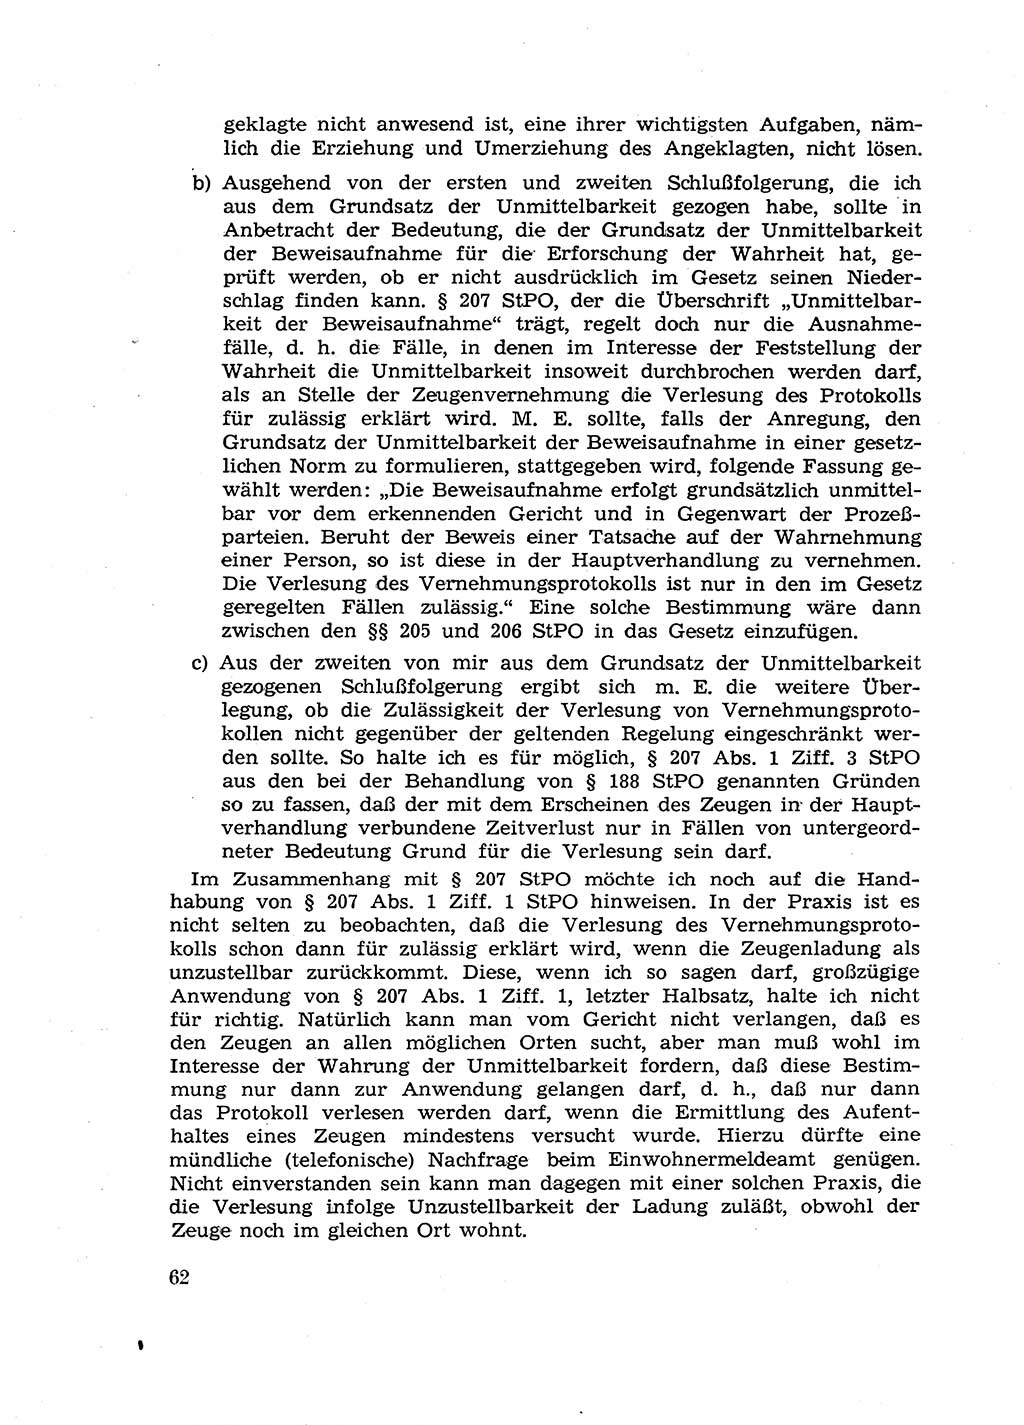 Fragen des Beweisrechts im Strafprozess [Deutsche Demokratische Republik (DDR)] 1956, Seite 62 (Fr. BeweisR. Str.-Proz. DDR 1956, S. 62)